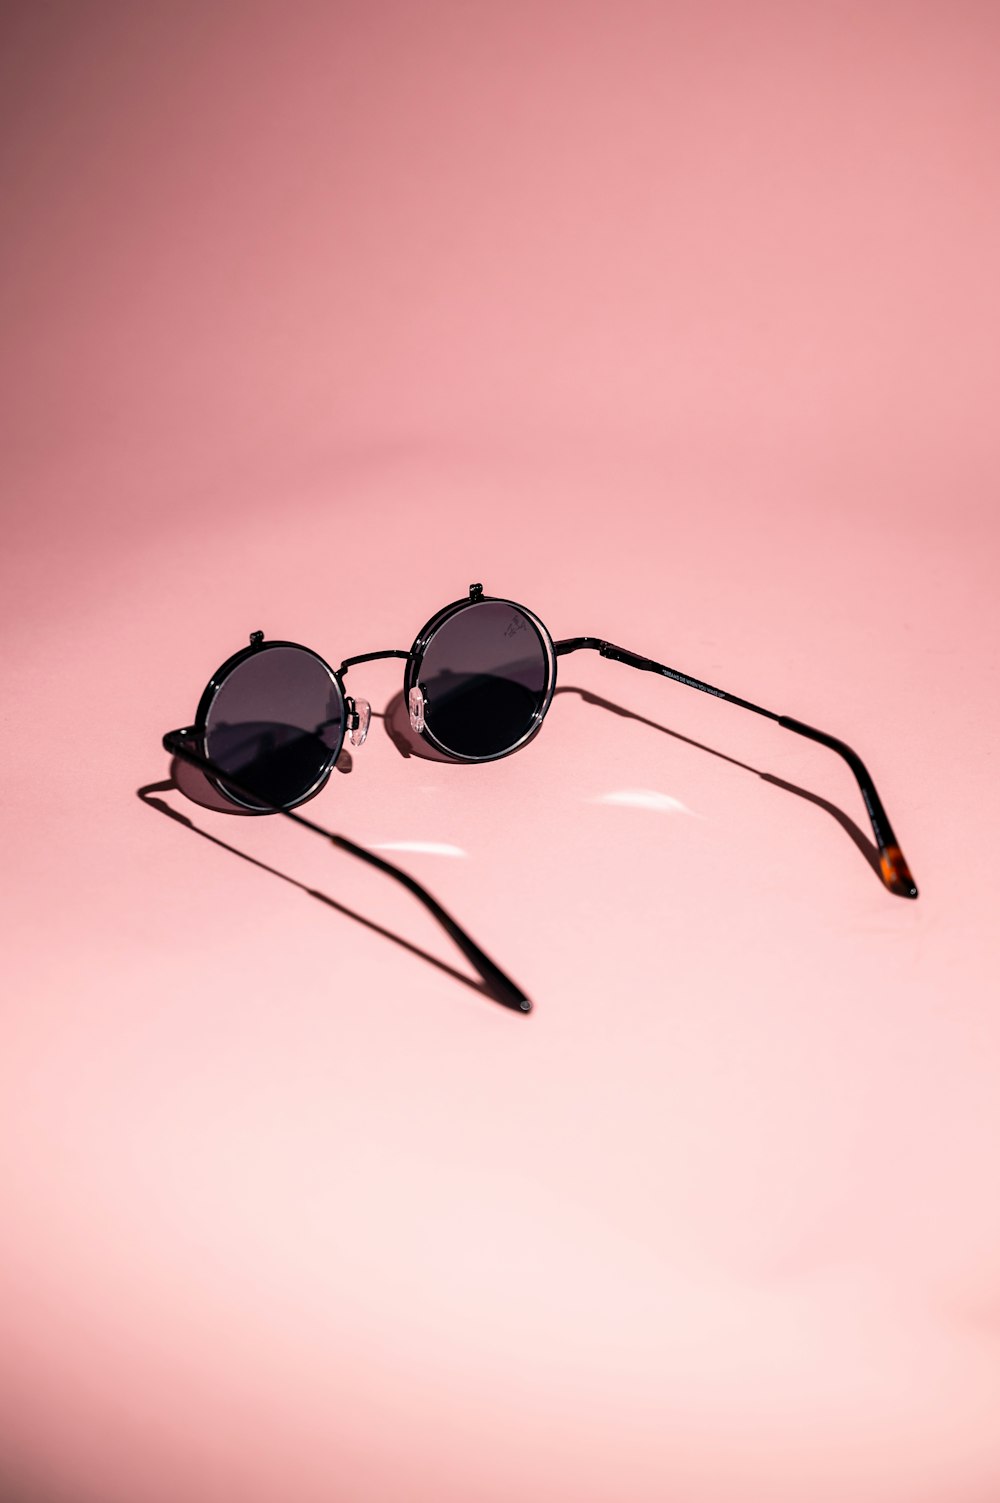 gafas de sol con montura negra sobre superficie blanca